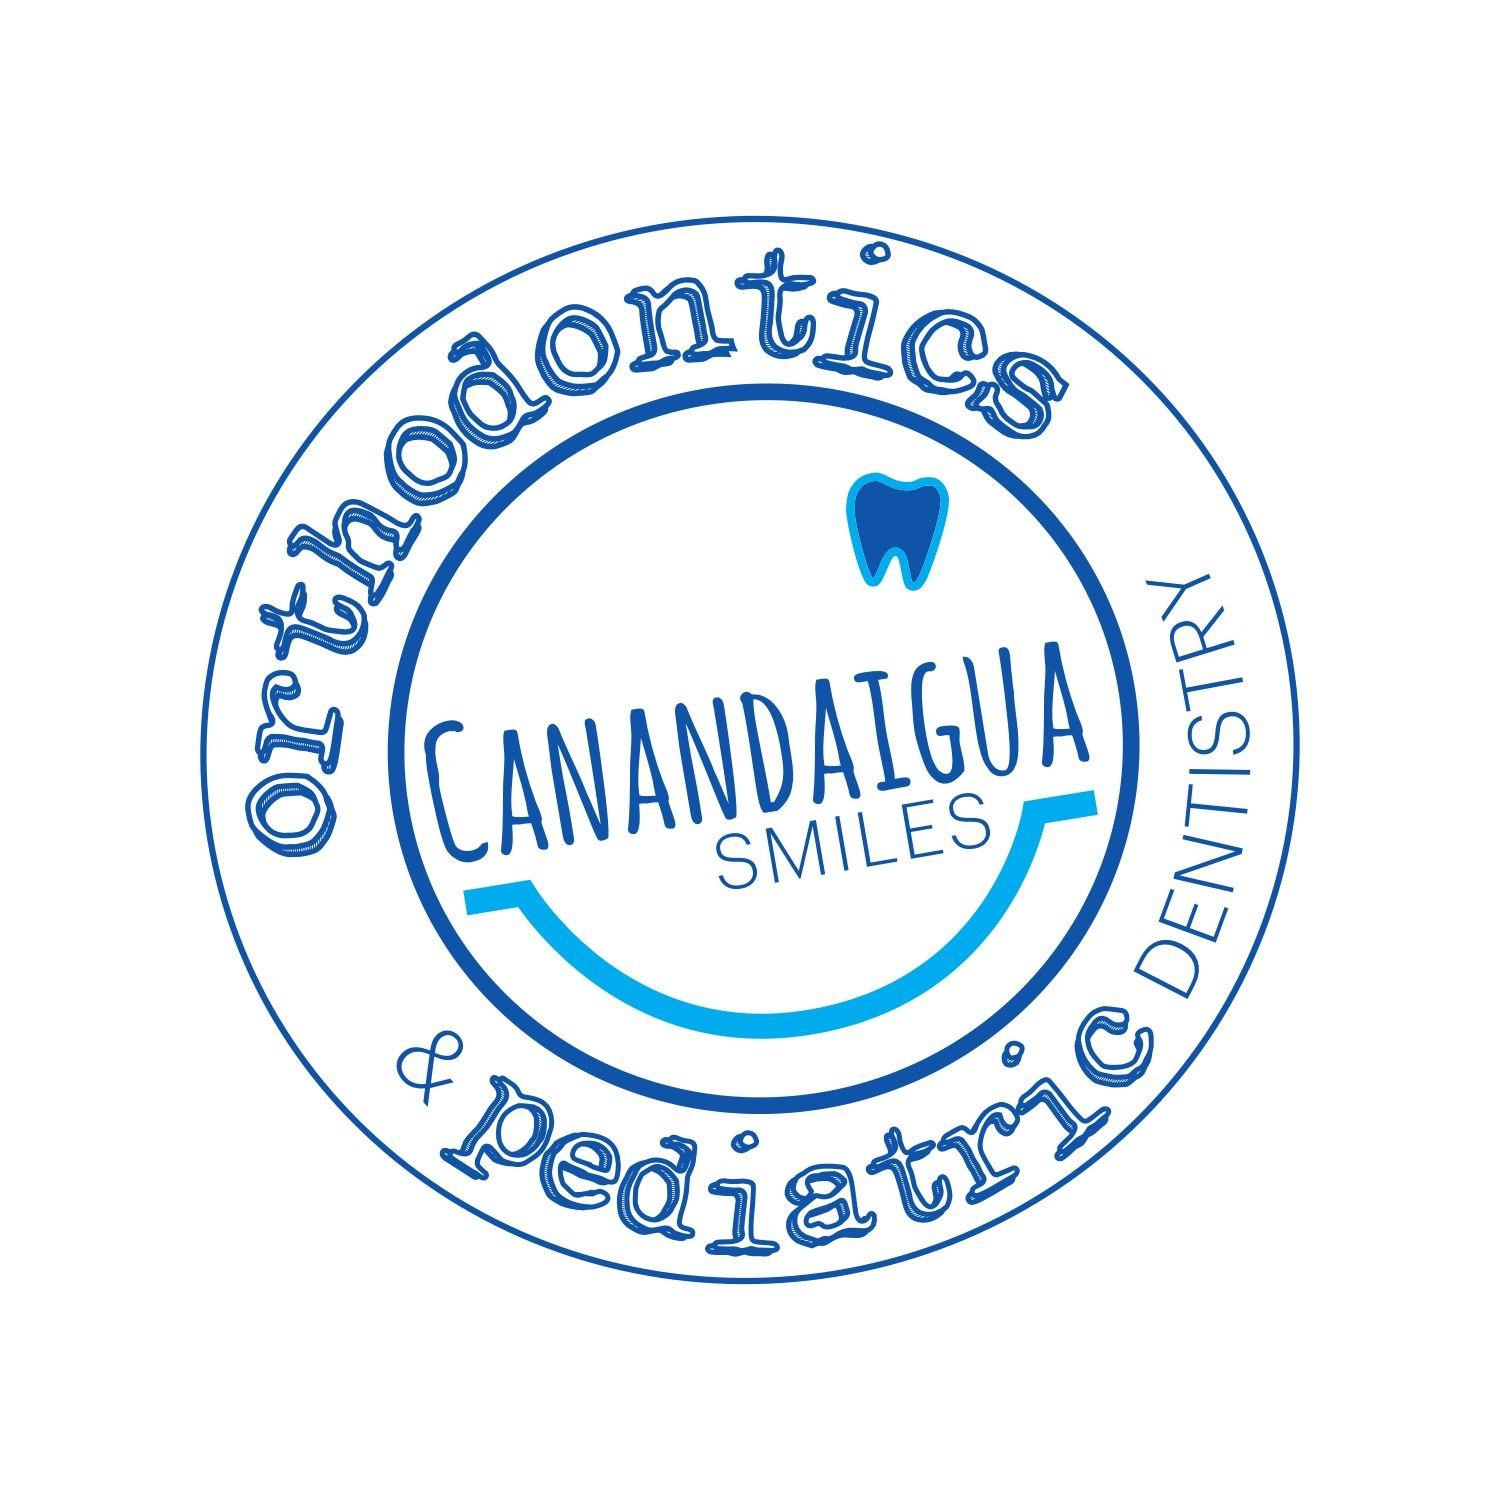 Canandaigua Smiles Orthodontics and Pediatric Dentistry - Canandaigua, NY 14424 - (585)394-4058 | ShowMeLocal.com